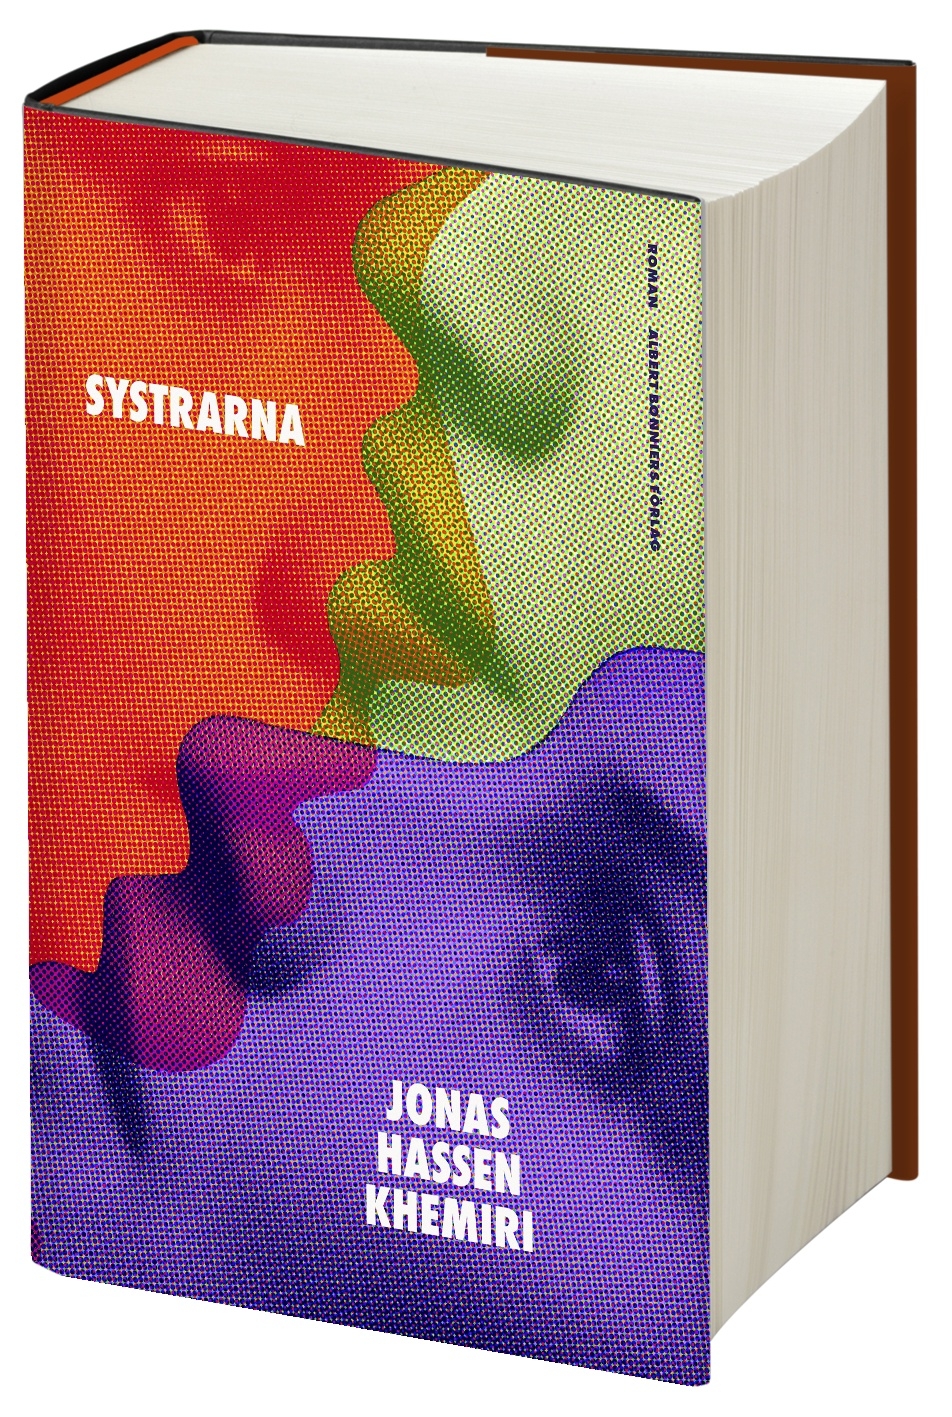 ”Systrarna” - en bok av Jonas Hassen Khemiri.